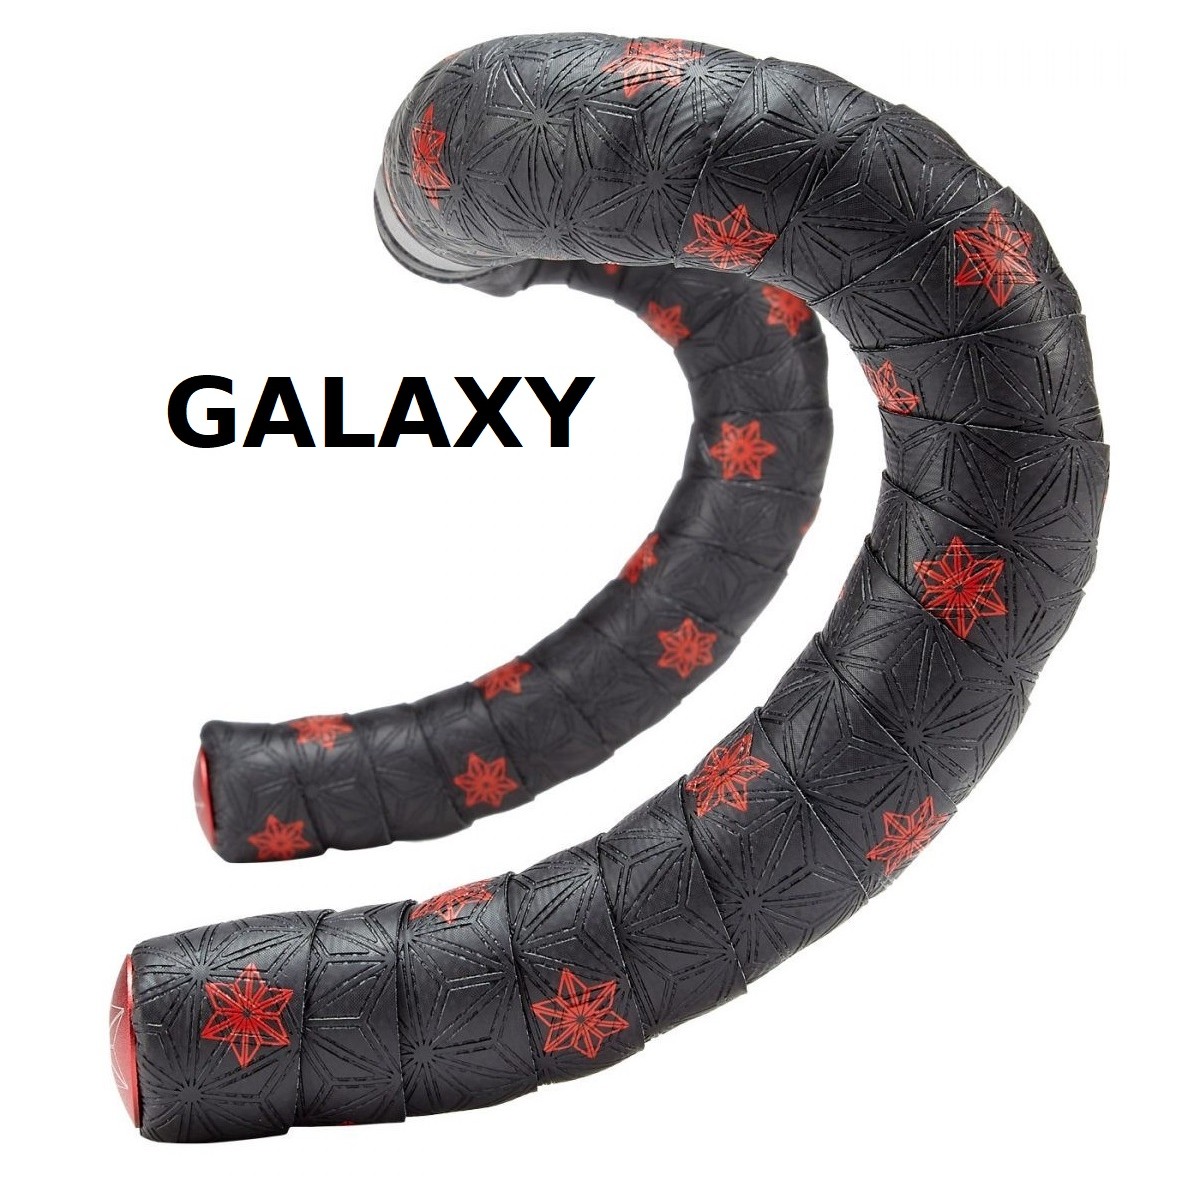 GUIDOLINE - Super Sticky Kush Galaxy - SZT-SPSTKU-GALAXY